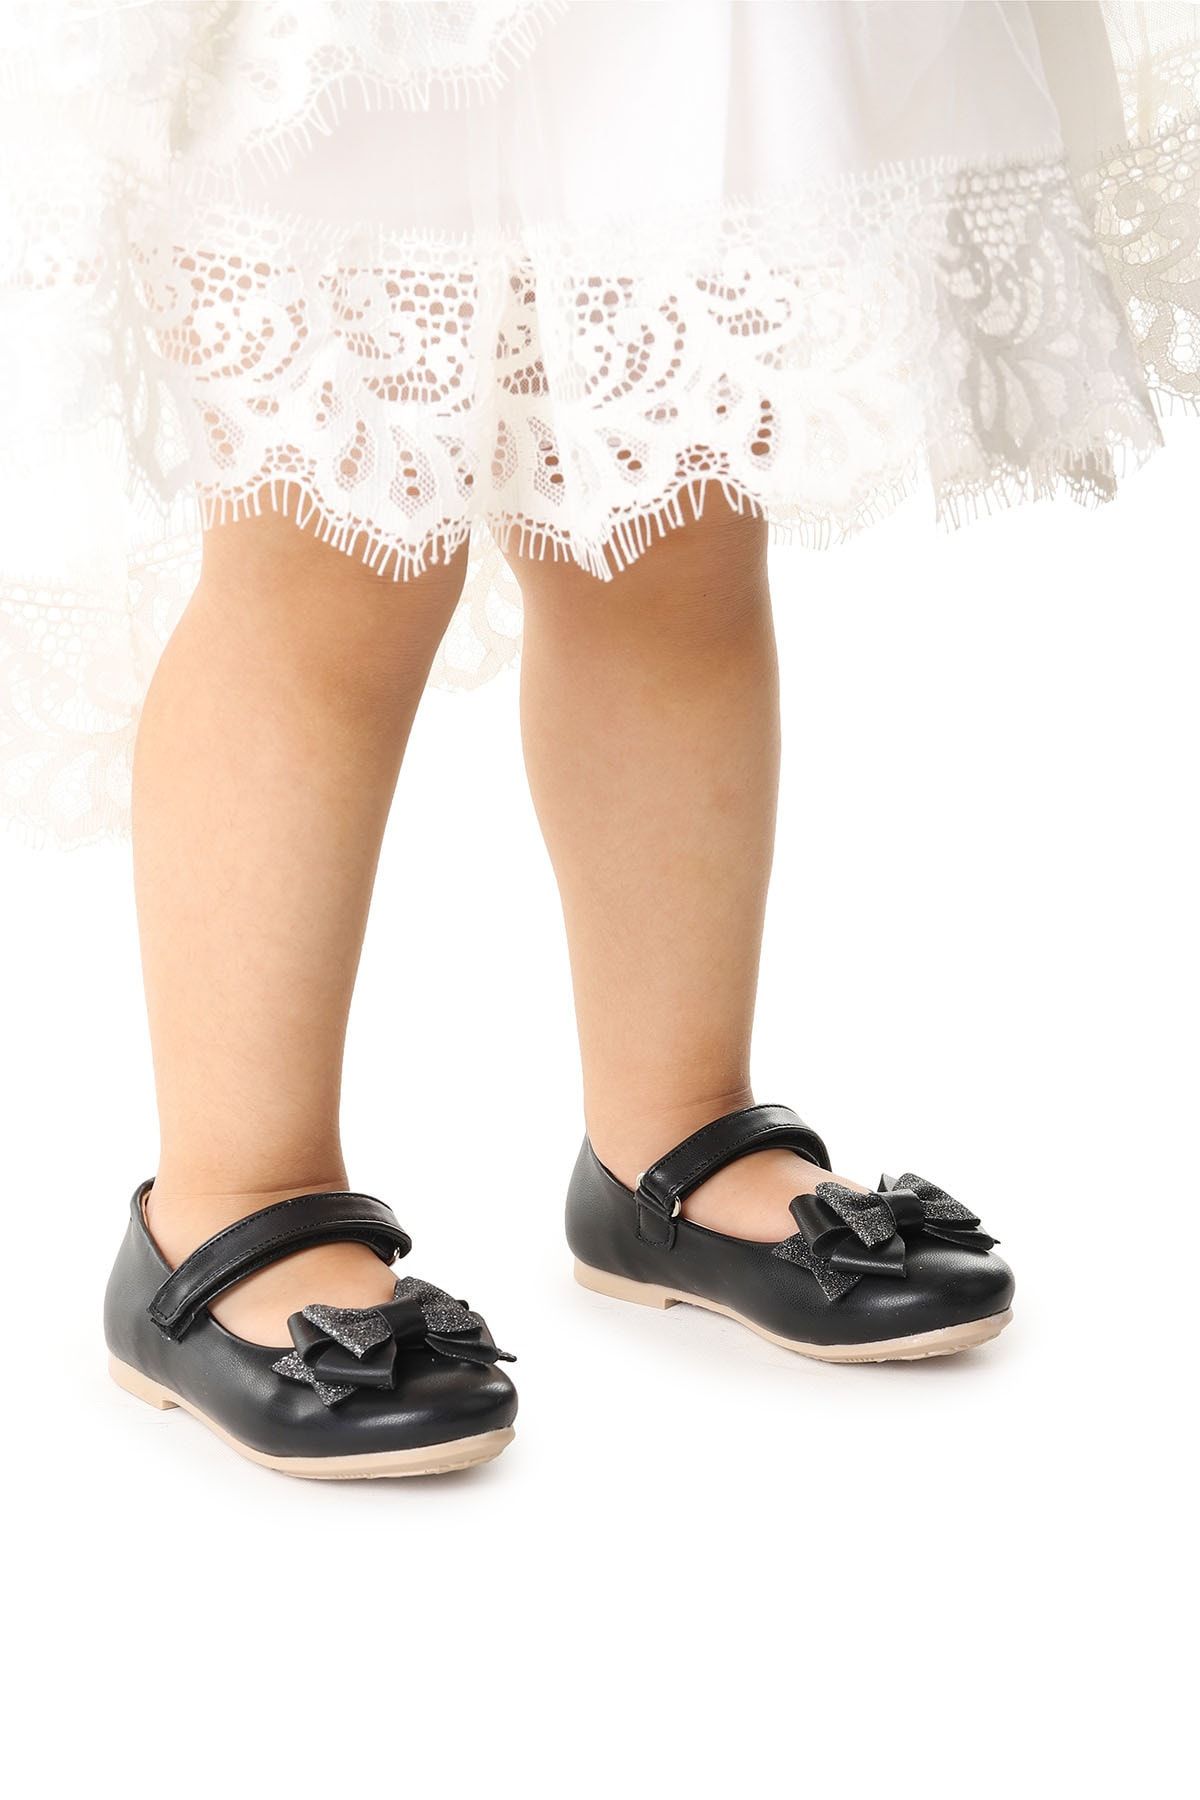 Kiko Kids Cırtlı Kum Sim Fiyonklu Kız Çocuk Babet Ayakkabı Ege 202 Cilt